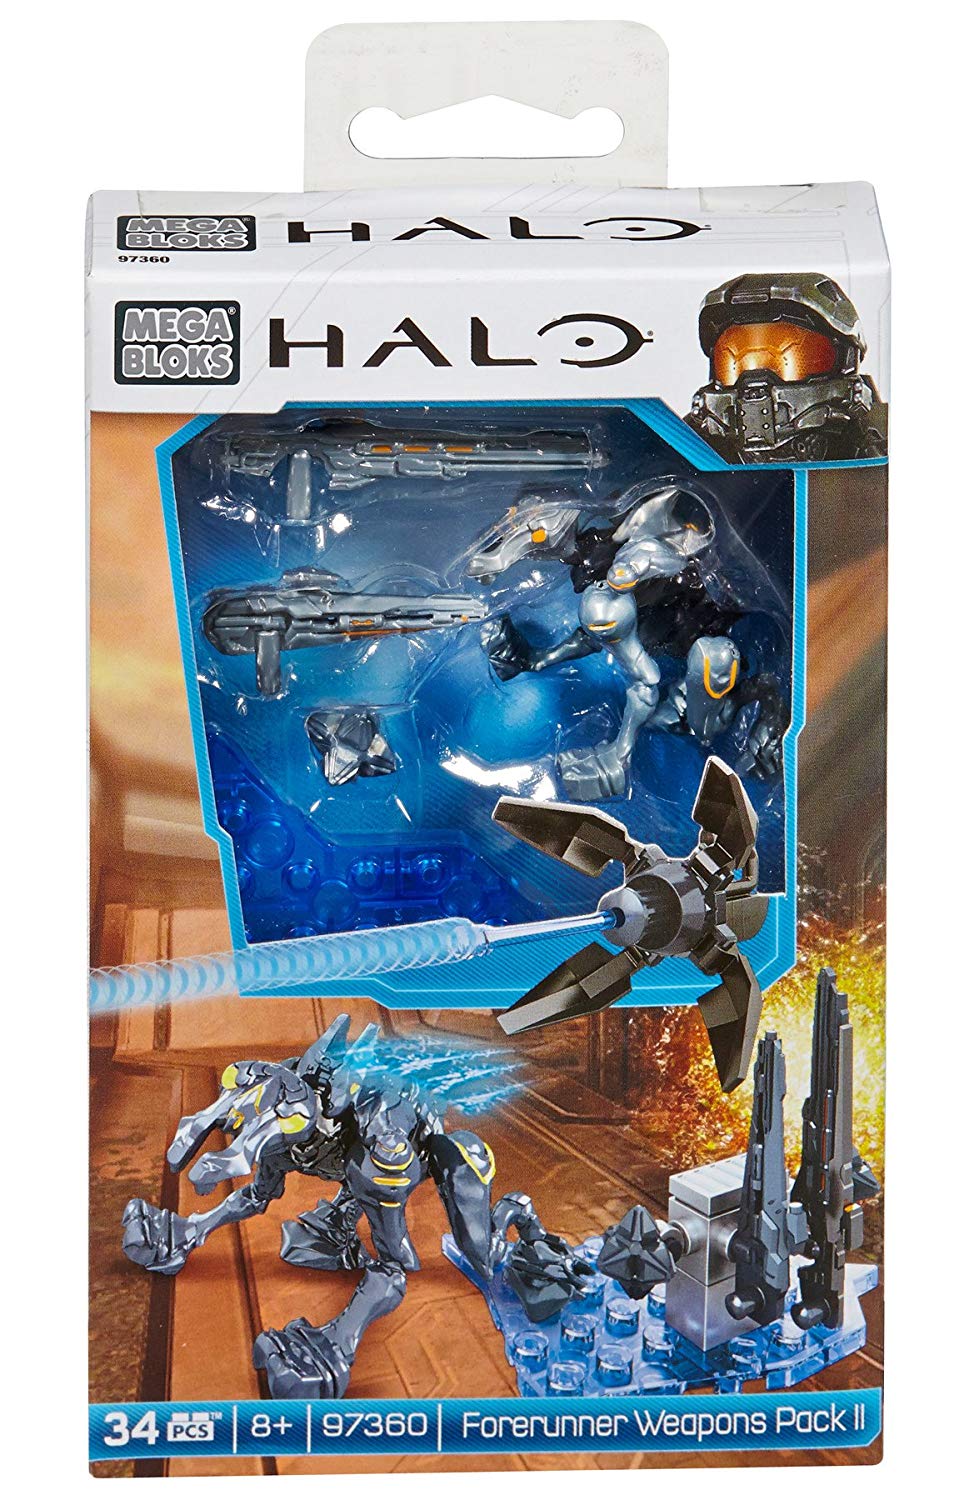 Halo – Mega Bloks – Forerunner Weapon Pack 2 – 97360